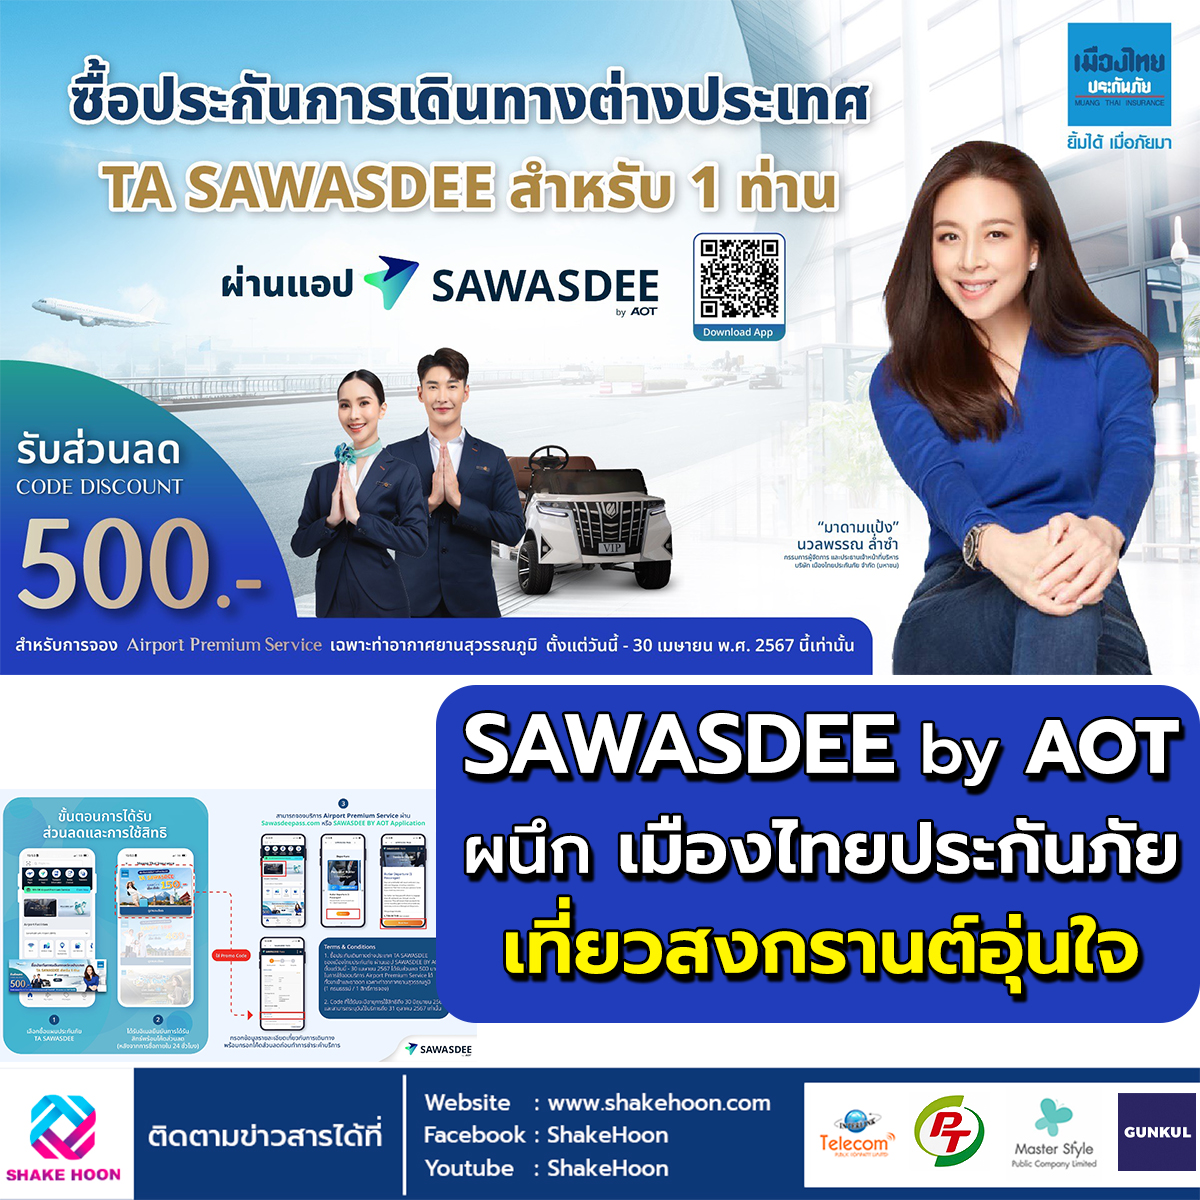 SAWASDEE by AOT ผนึก เมืองไทยประกันภัย เที่ยวสงกรานต์อุ่นใจ